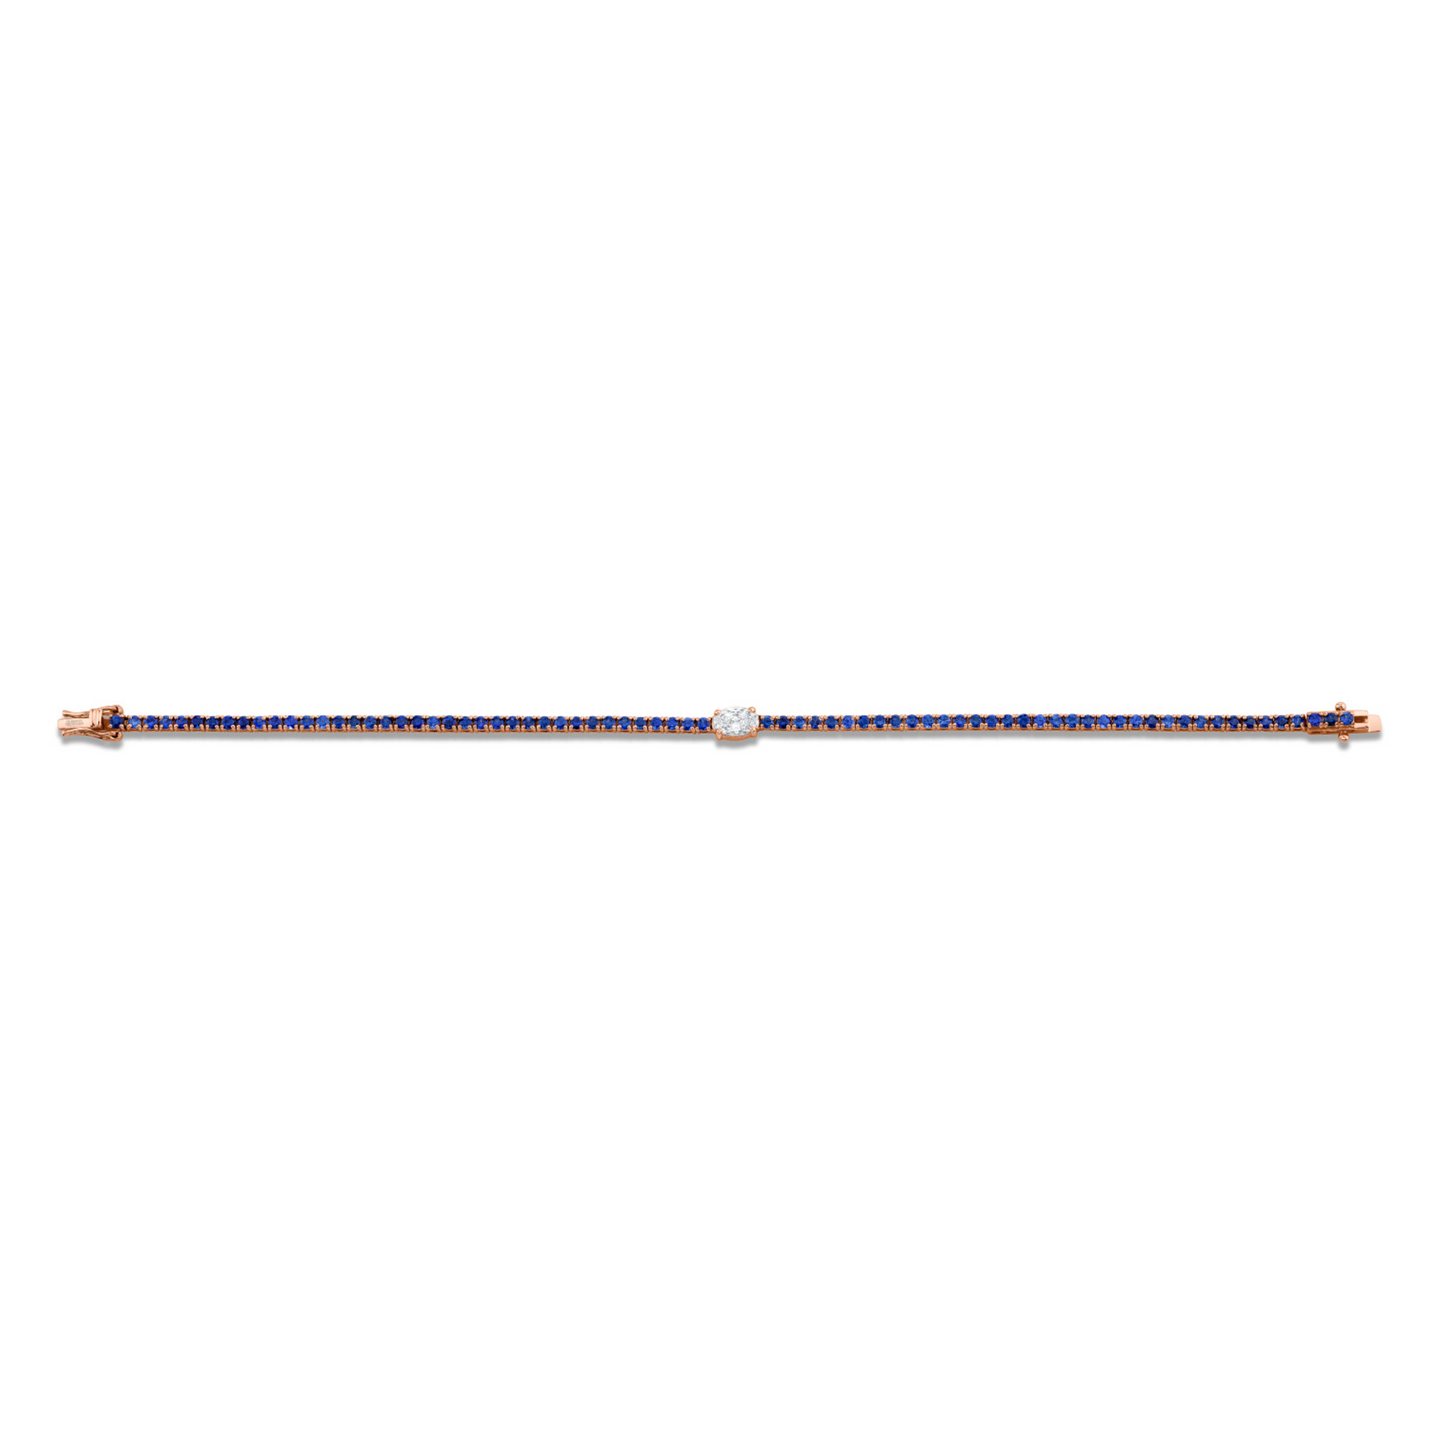 3.38 Carat 18k White Gold Straight Line Bracelet